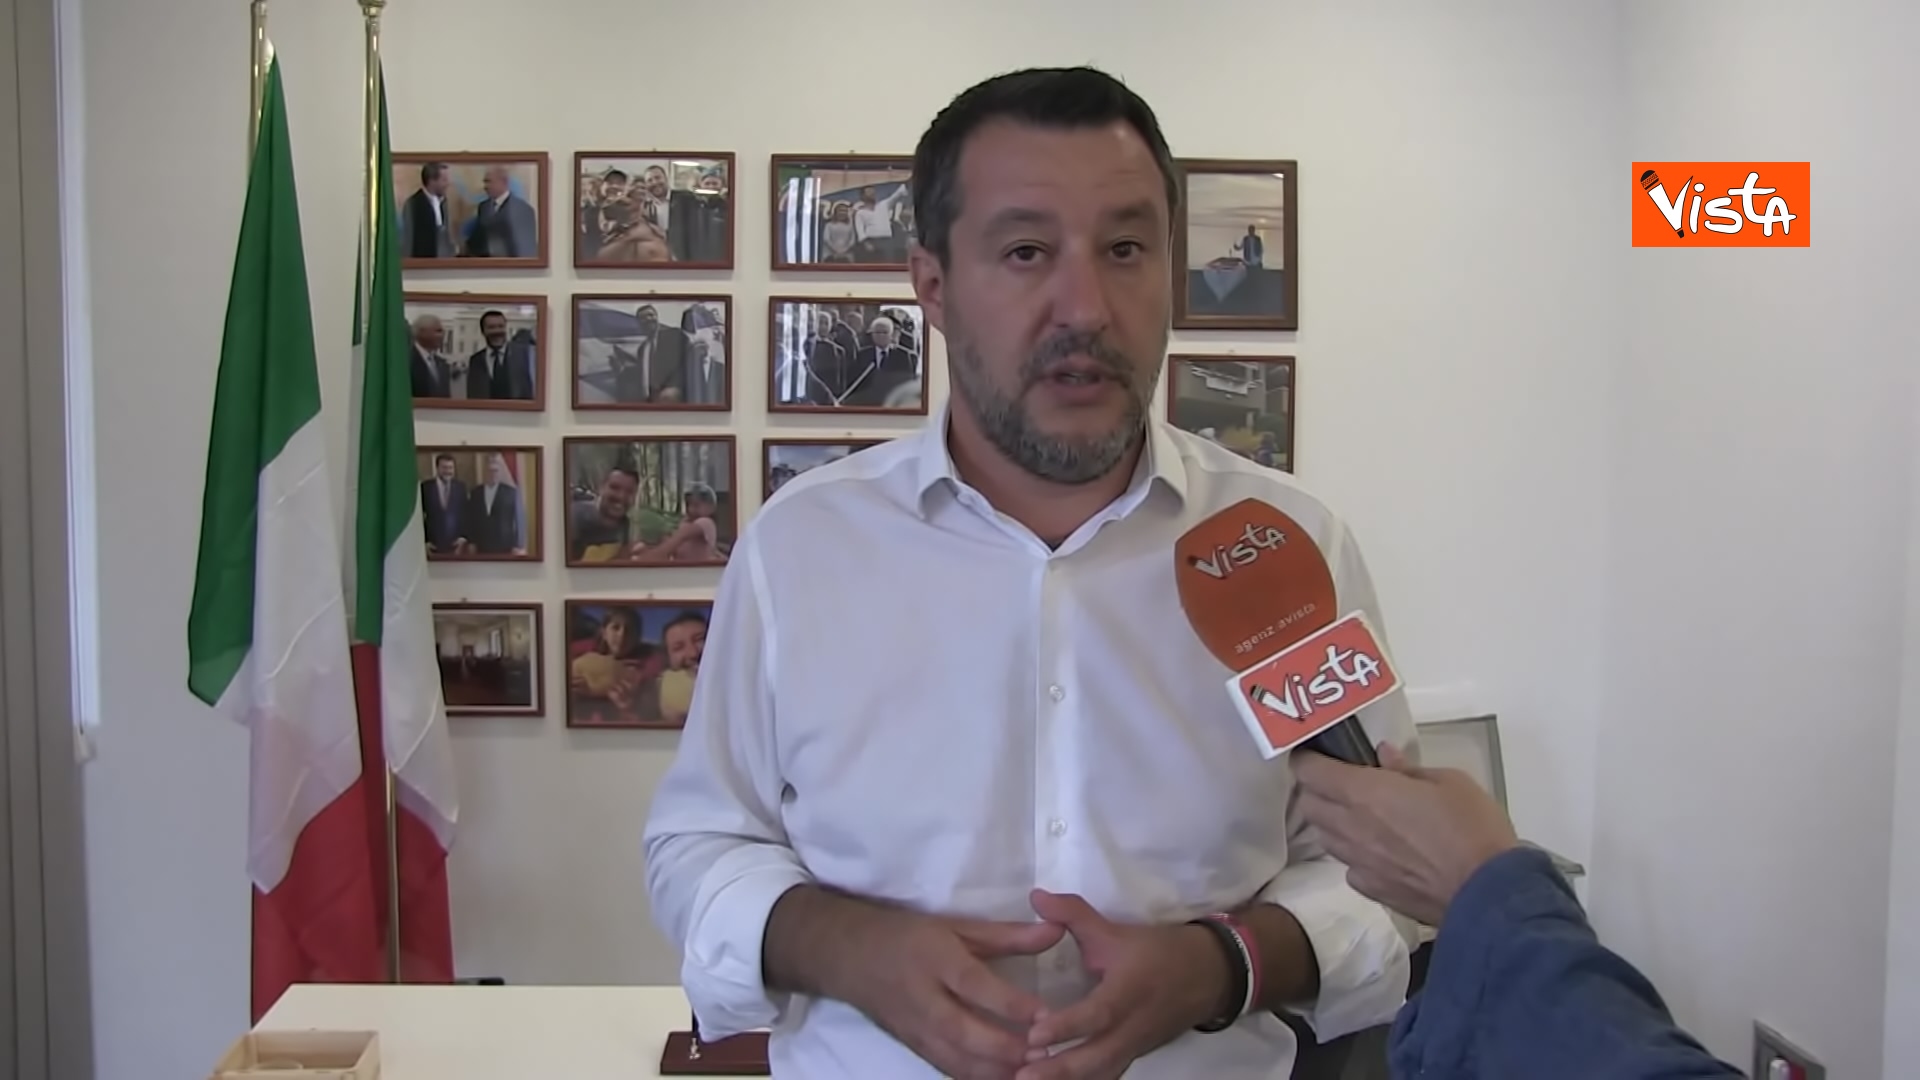 L'intervista a Matteo Salvini del direttore di Vista Jakhnagiev, le immagini